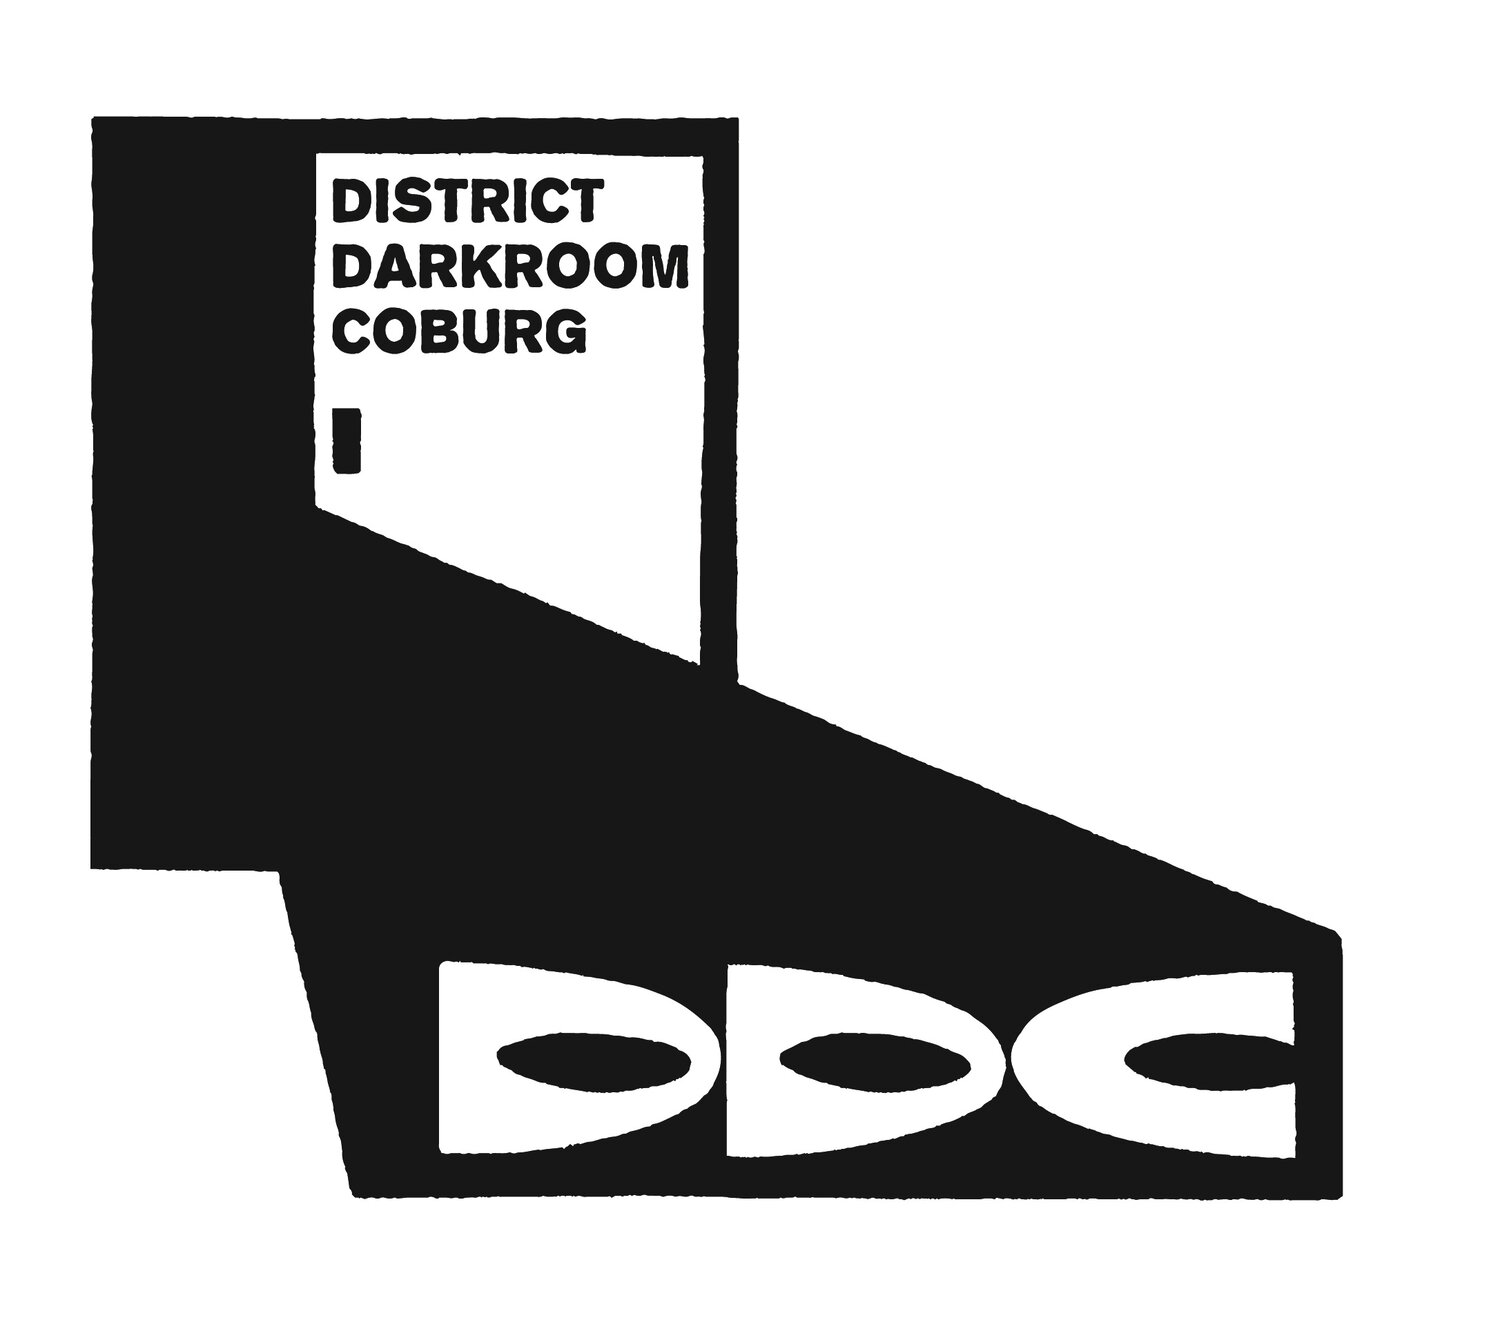 District darkroom coburg